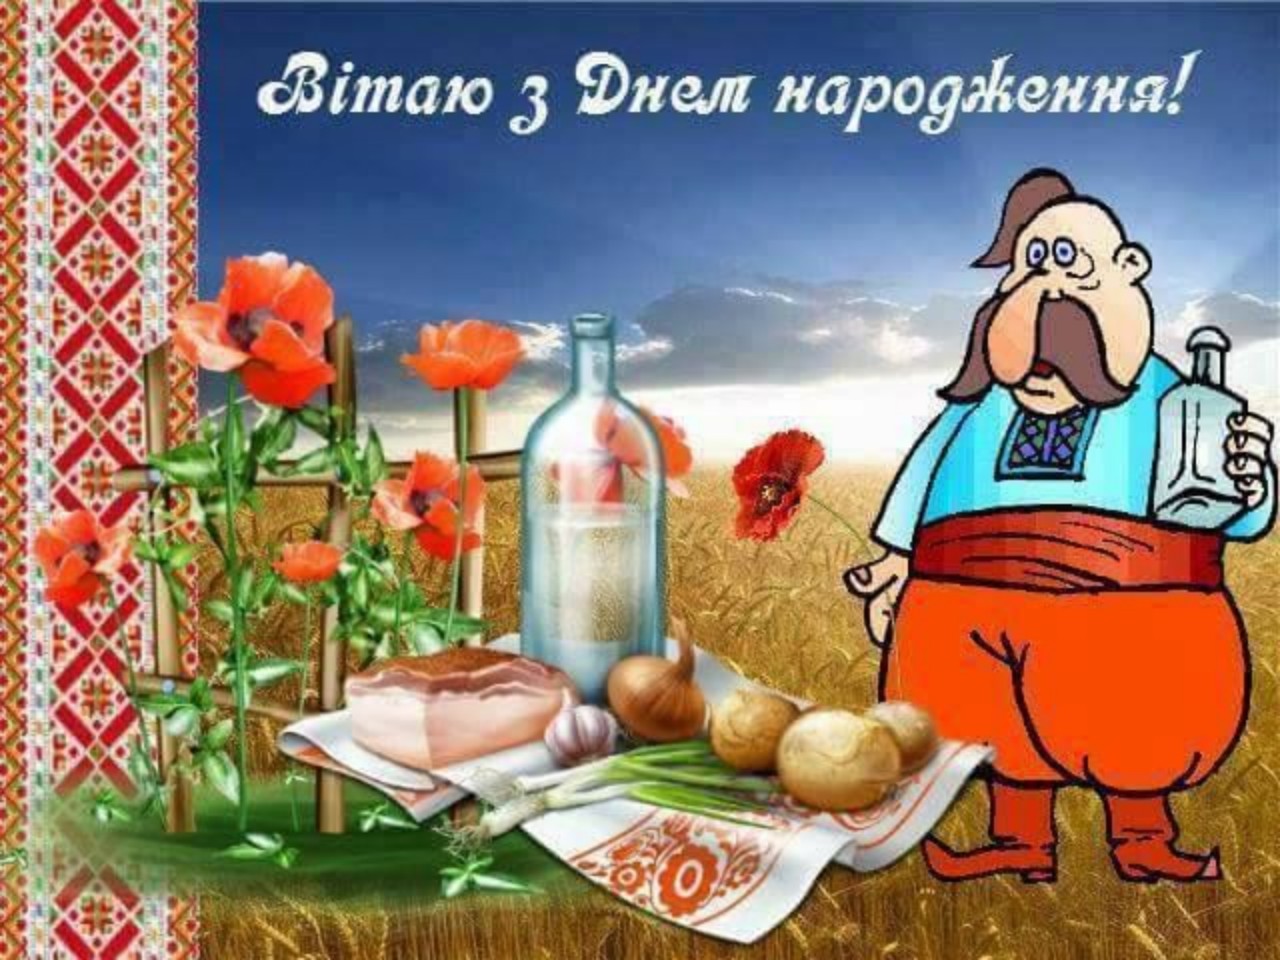 Поздравить с днем рождения на украинском. С днём рождения на украинском языке. Поздравления с днём рождения на украинском языке. Открытка с днем рождения на украинском. Поздравление на украинском для мужчины.